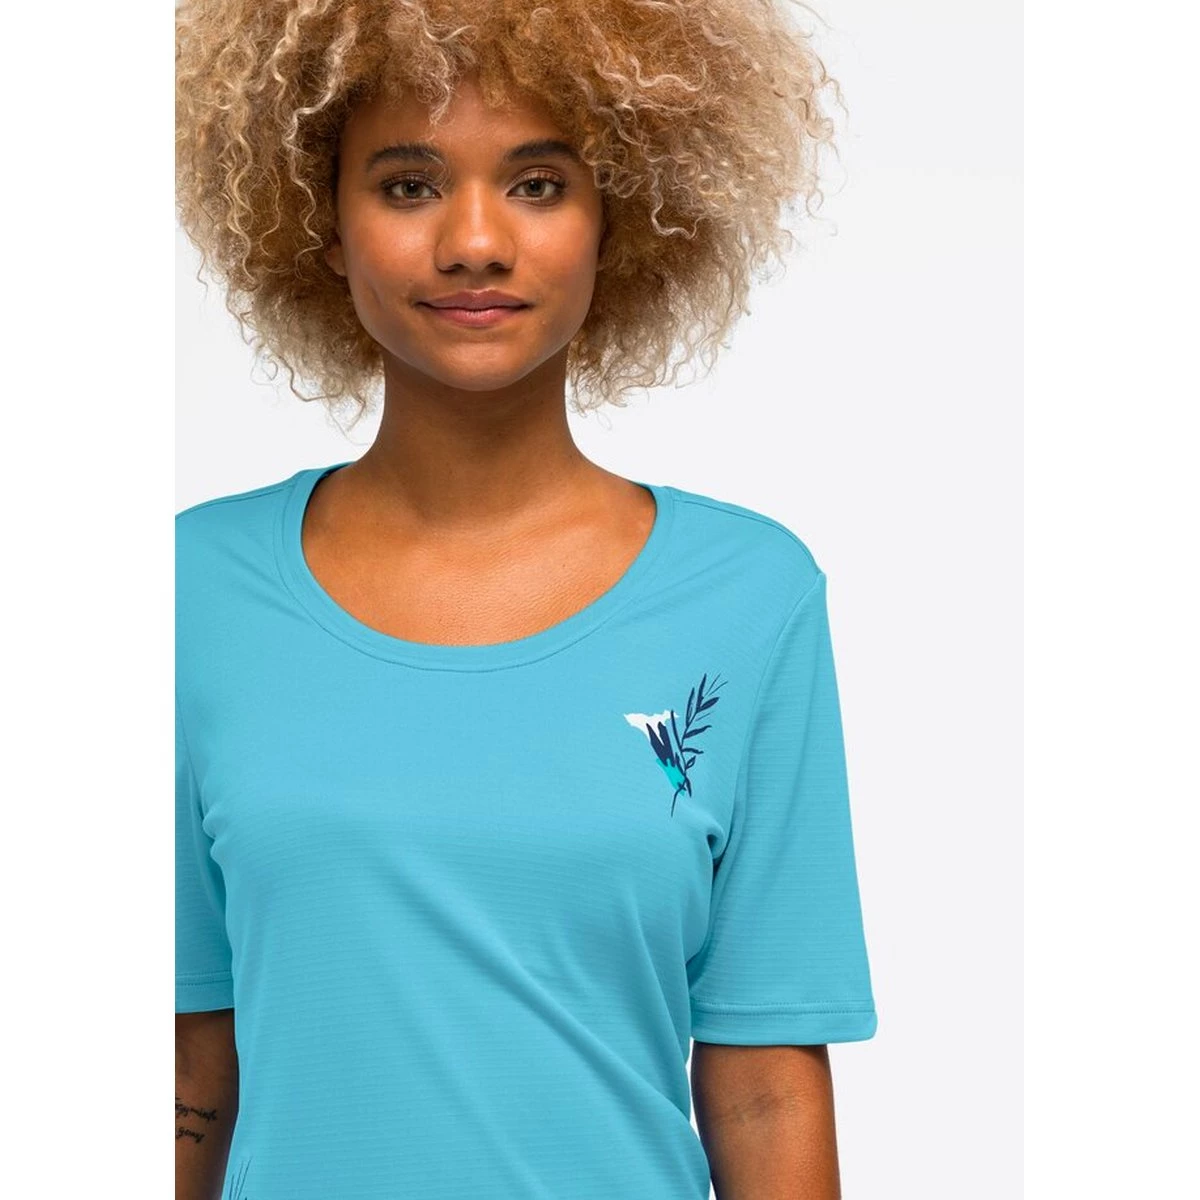 Intersport & / Outdoor Sporten T-shirt Broek - den Maier - sas Shirts - Sports - Outdoorkleding van Tops Biggelaar - Irmi